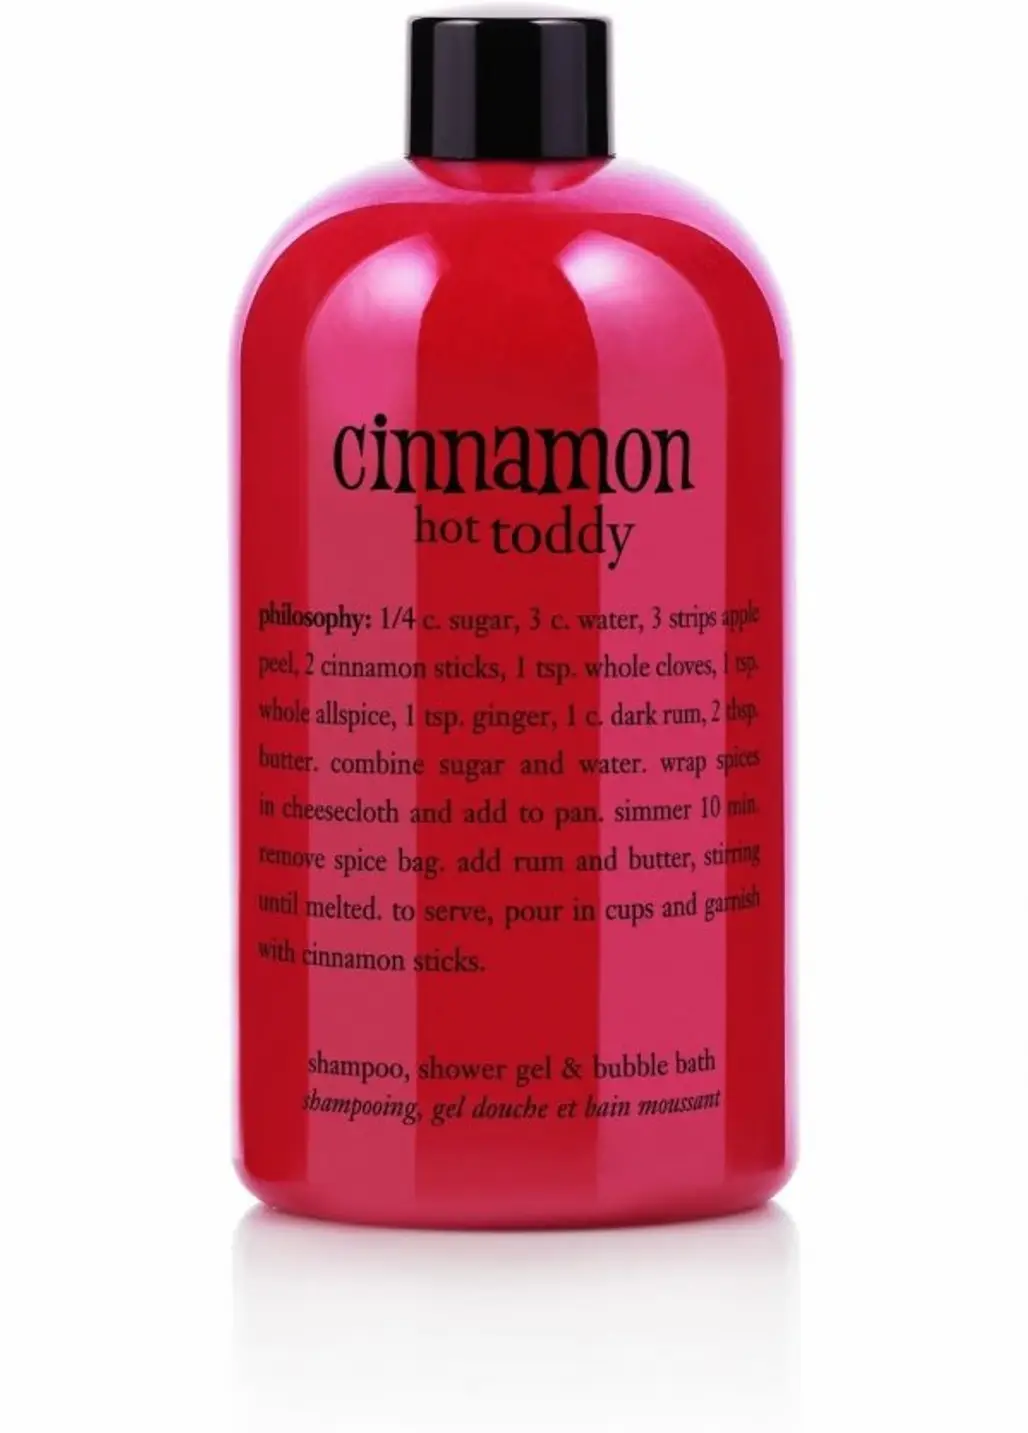 Cinnamon Hot Toddy Shampoo, Shower Gel & Bubble Bath